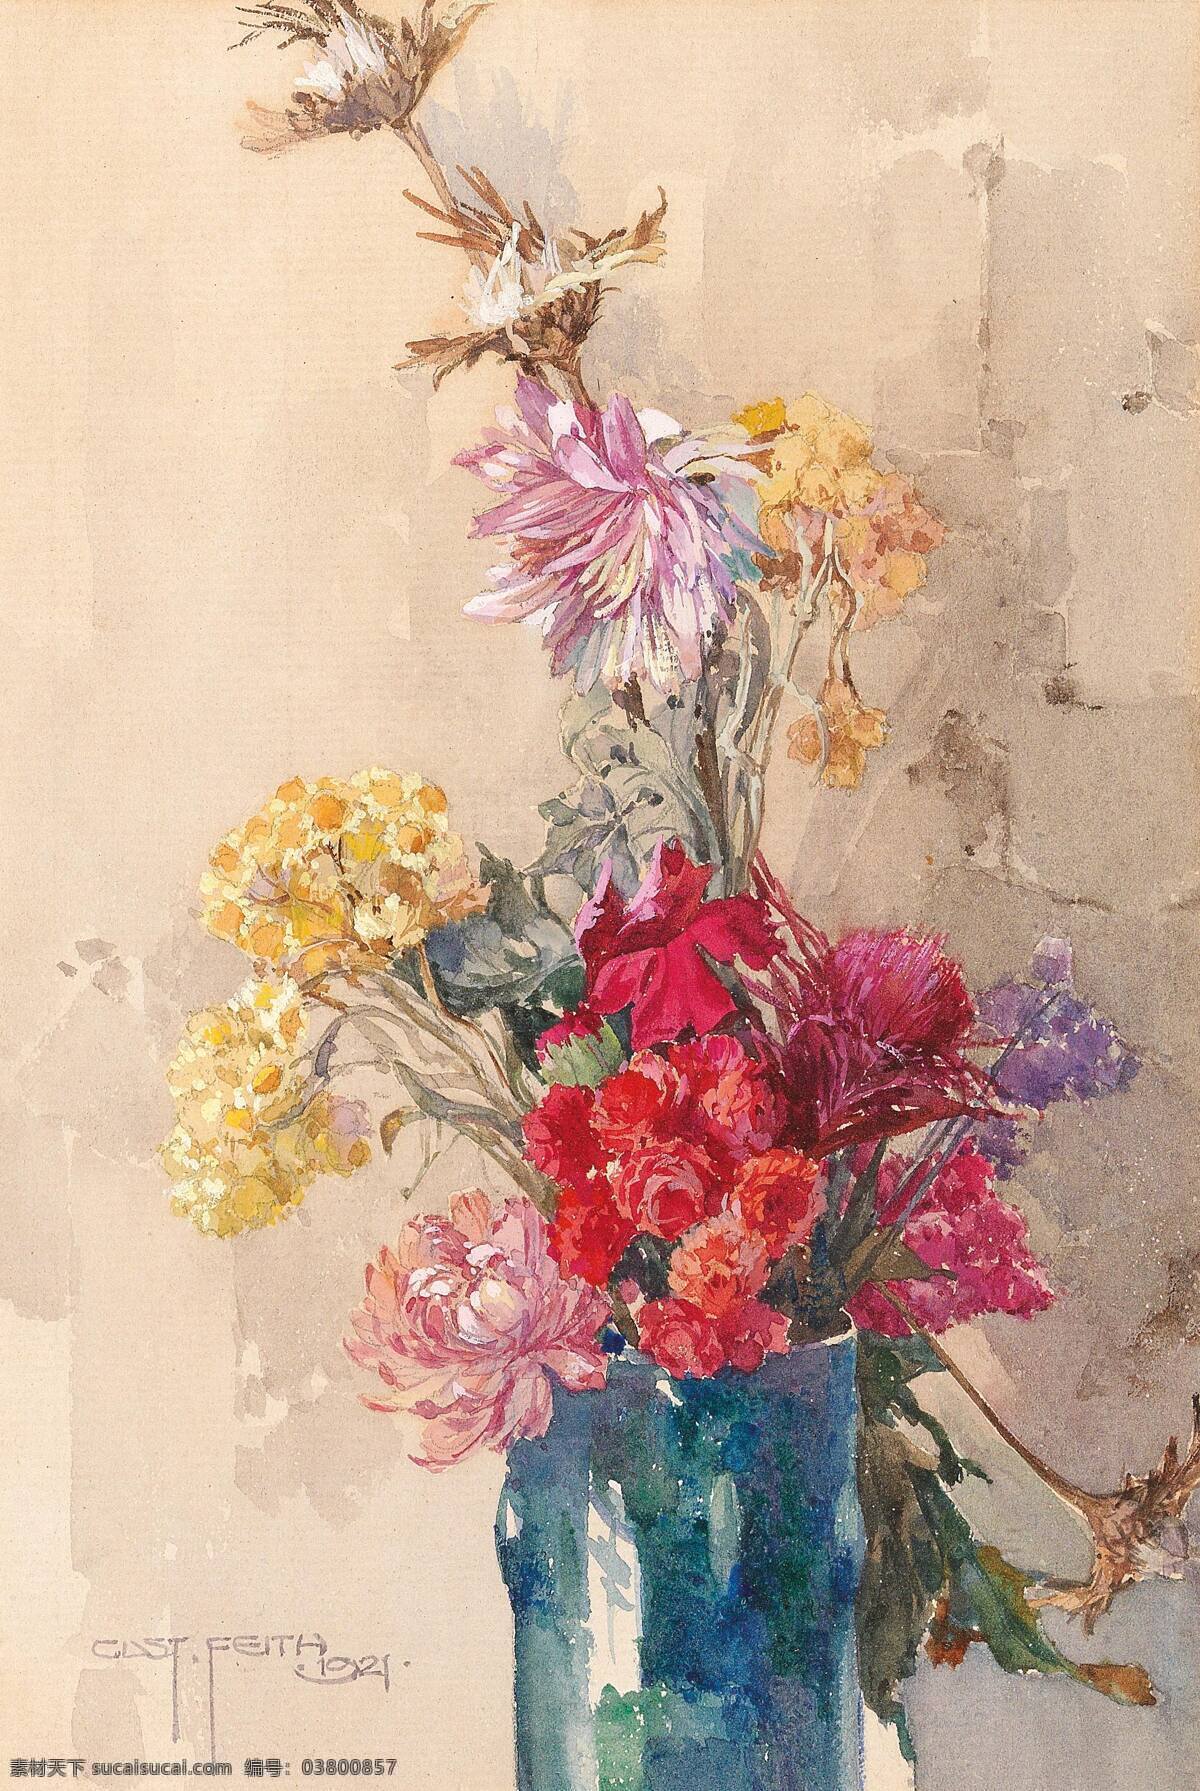 古斯塔夫 费斯作品 奥地利画家 蓝色花瓶 混搭鲜花 束红花 黄花 世纪 水彩画 油画 文化艺术 绘画书法